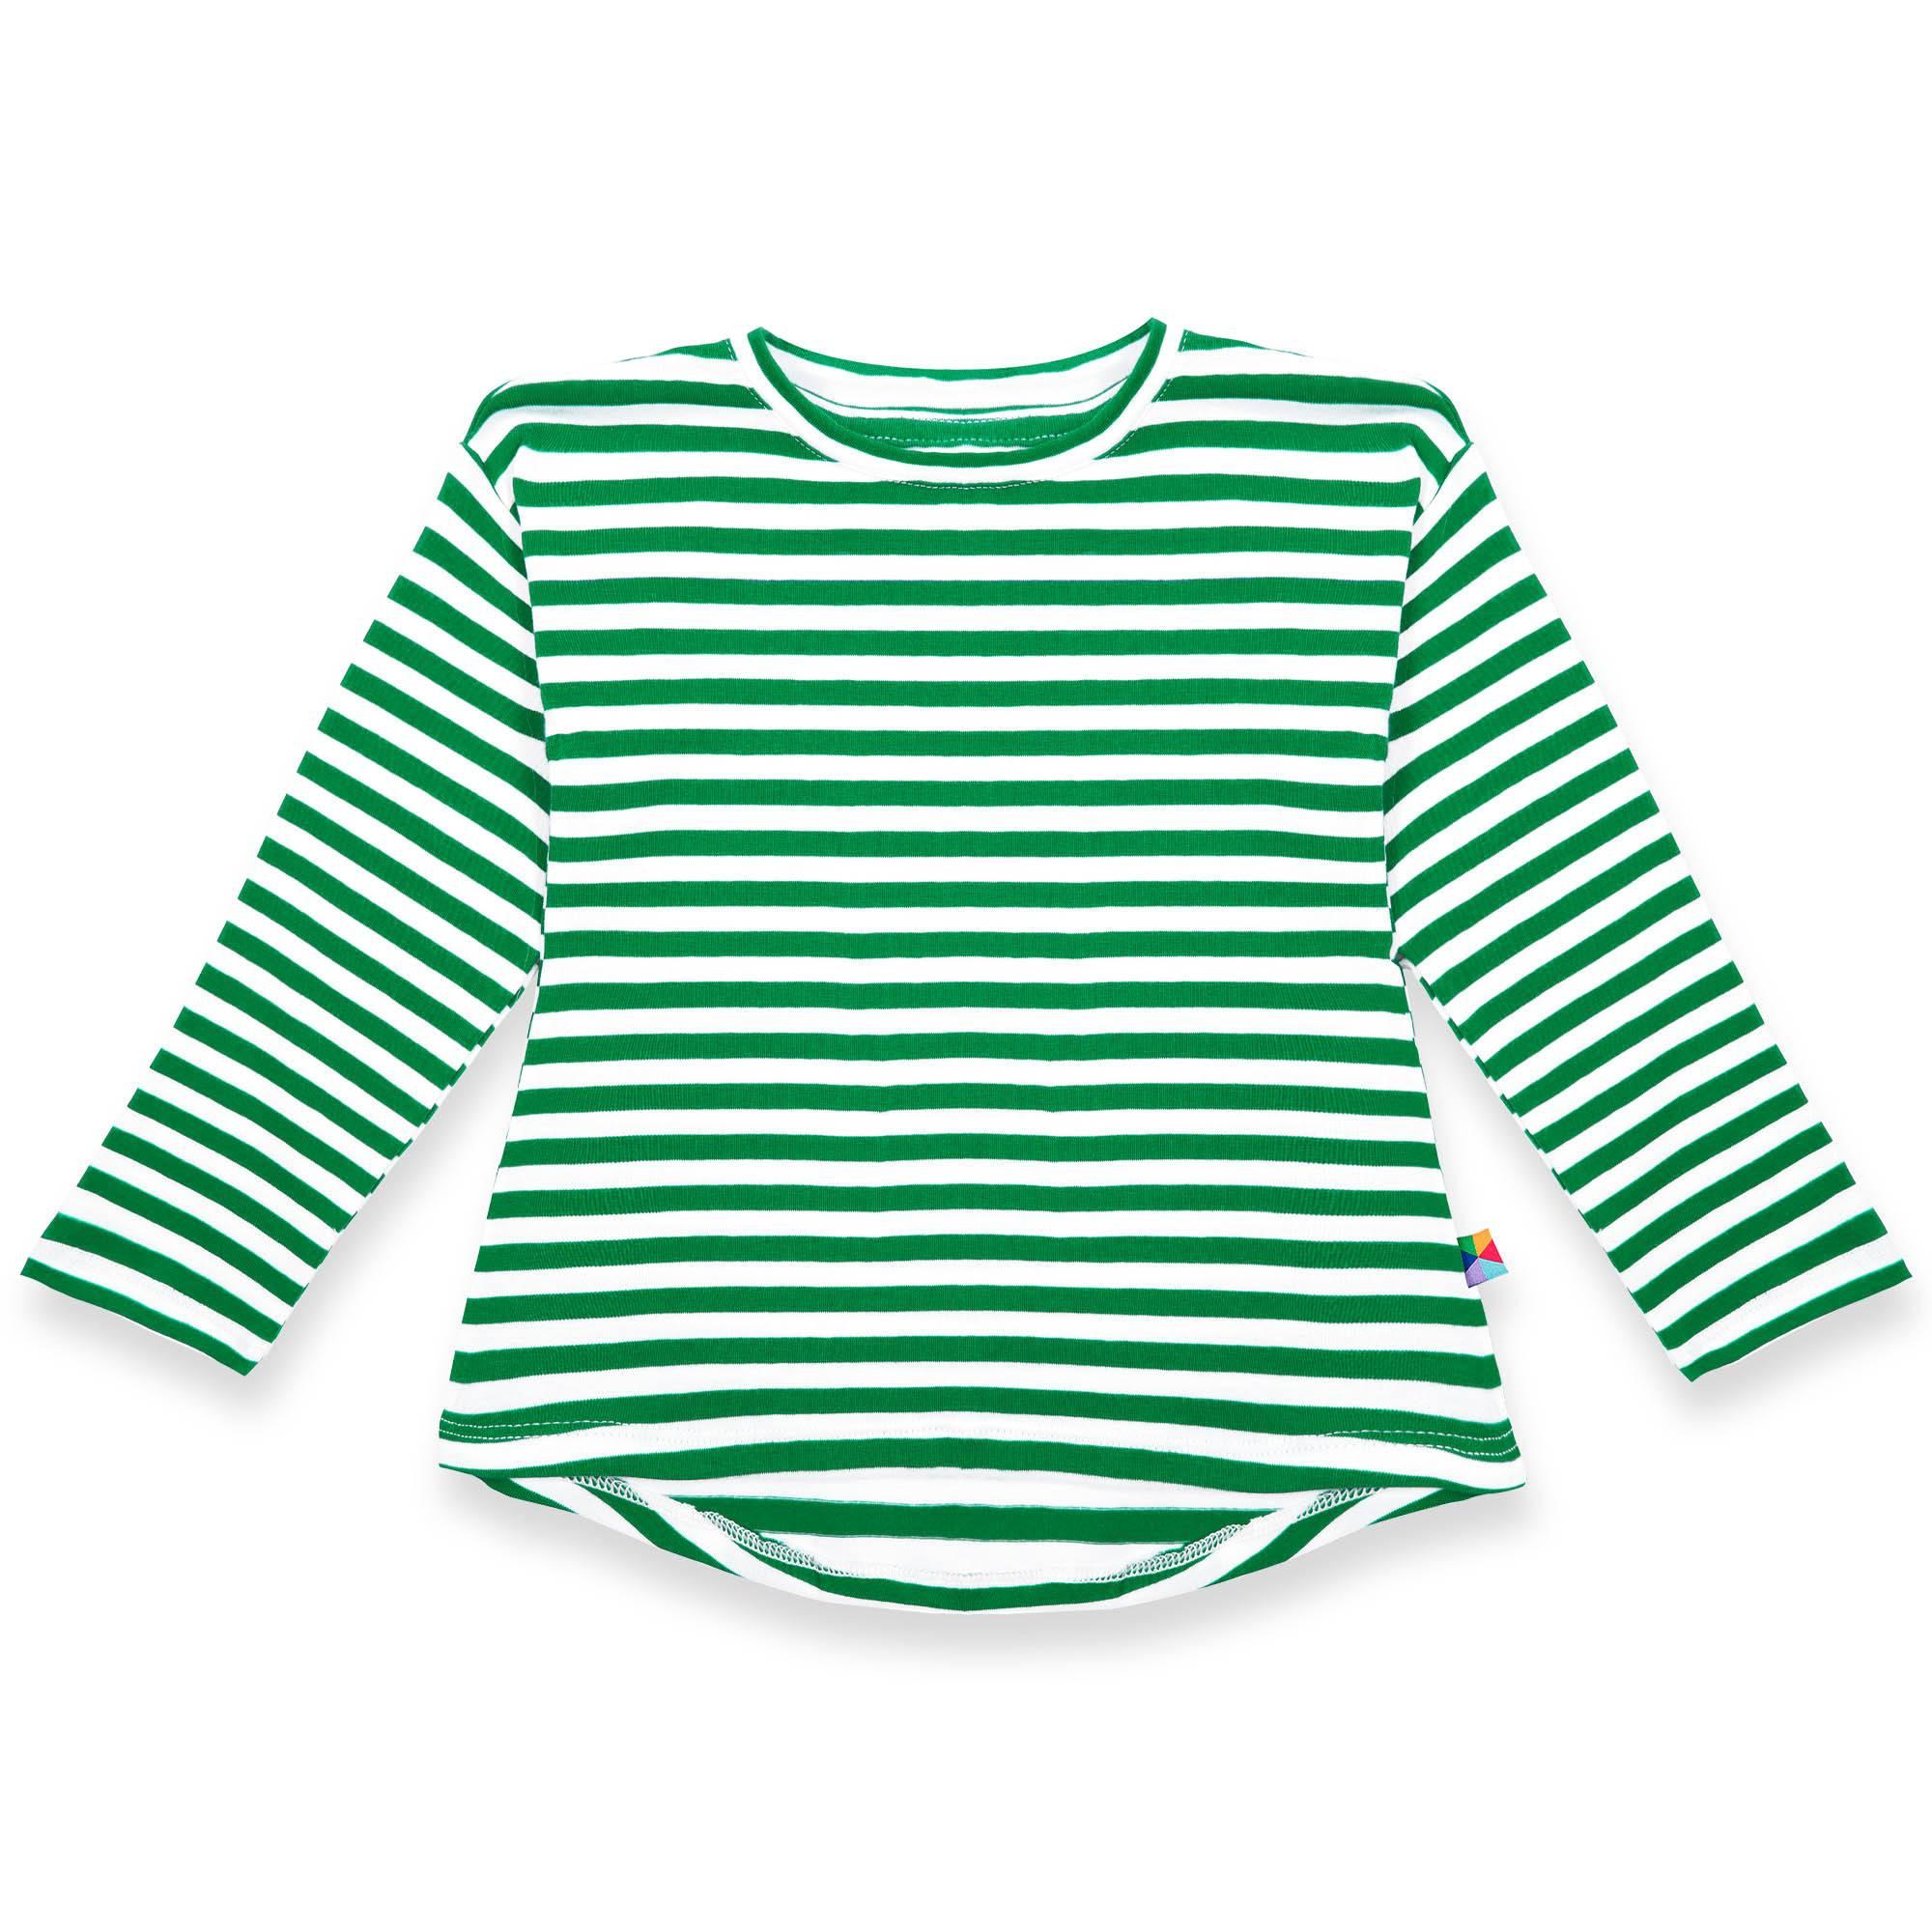 Zielona koszulka z przedłużanym tyłem w paski